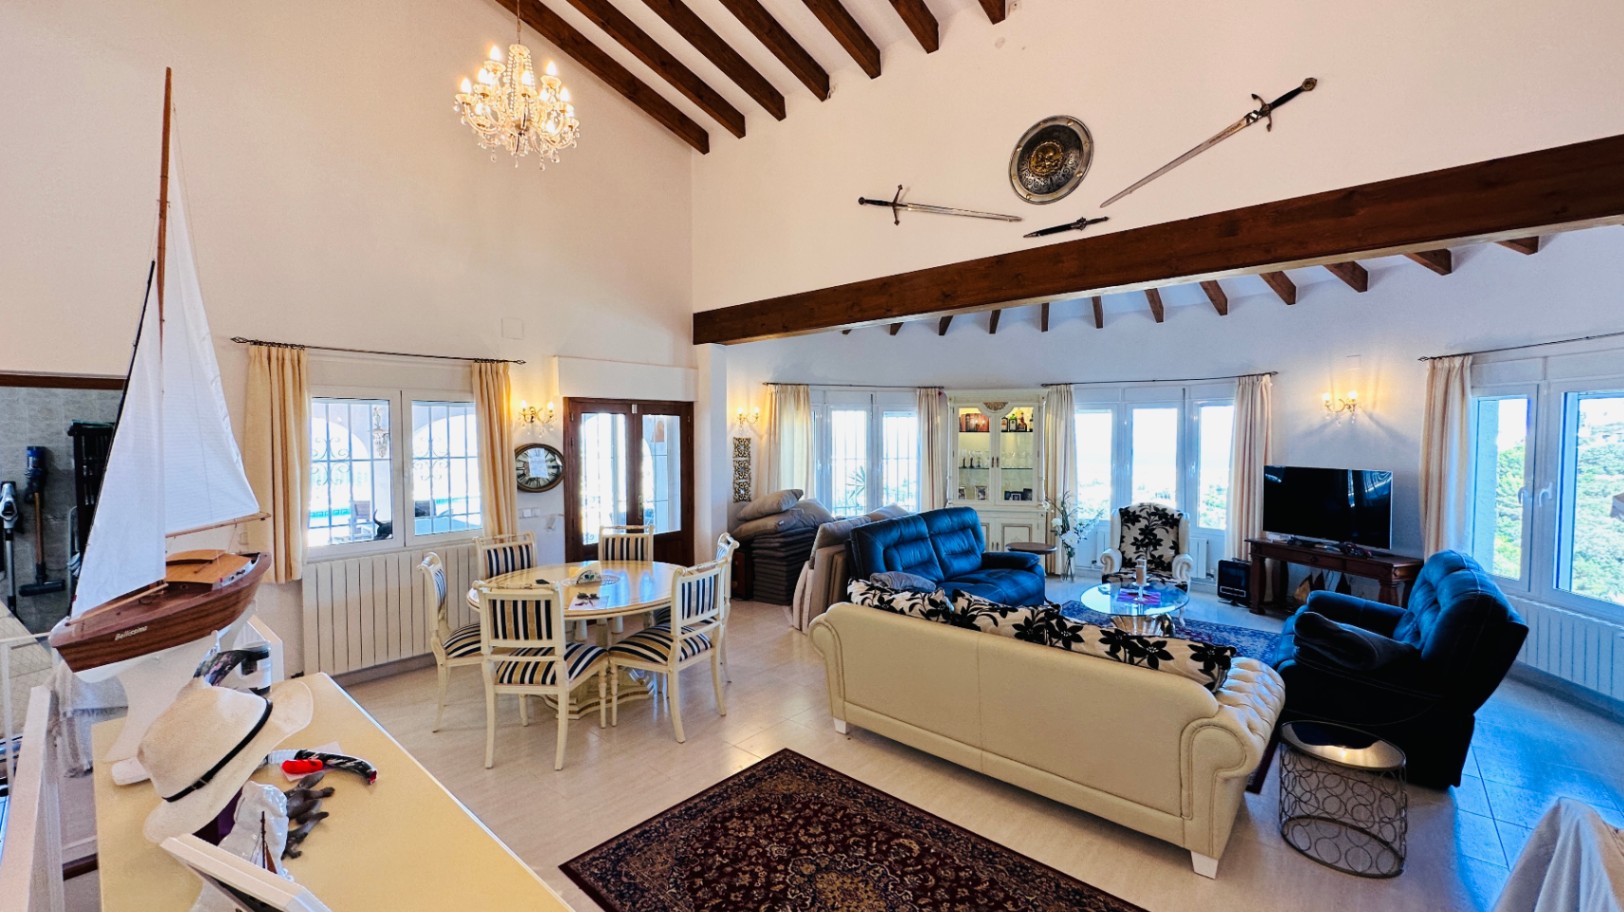 Villa spacieuse pour 2-3 familles, vue supérieure sur la mer, garage double, nombreux extras